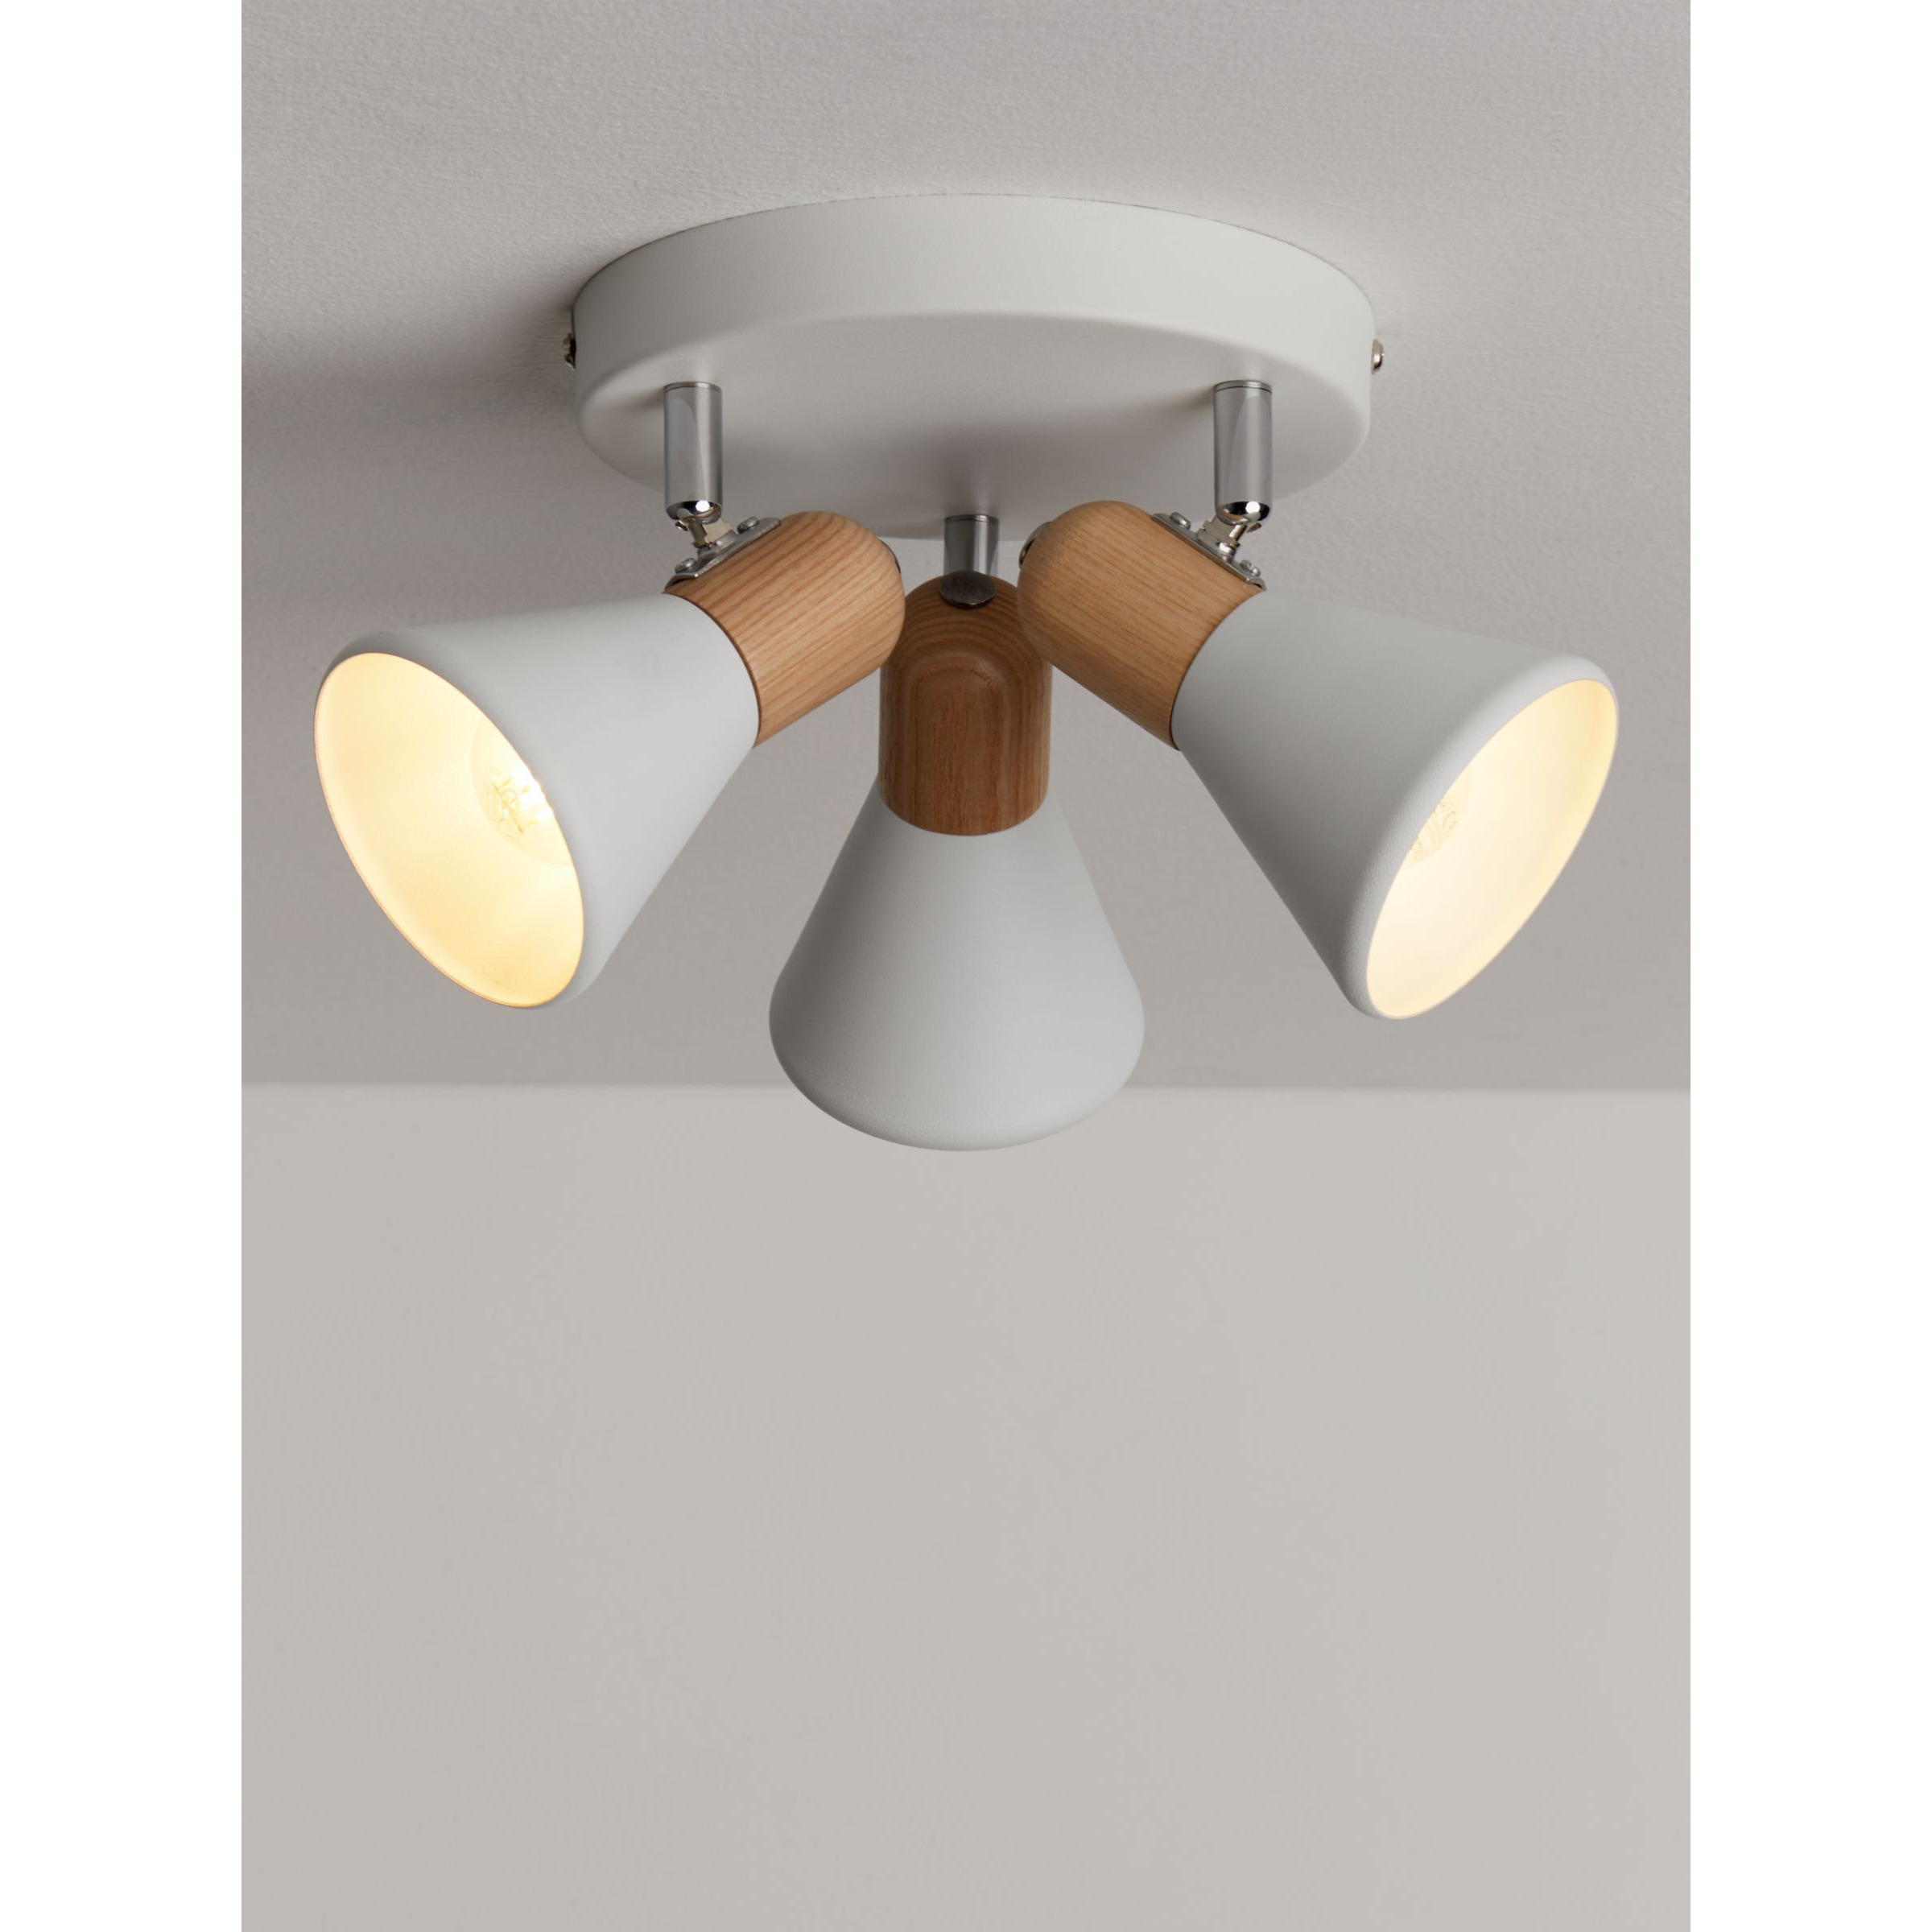 John Lewis SES LED 3 Spotlight Ceiling Plate, White/Wood - image 1